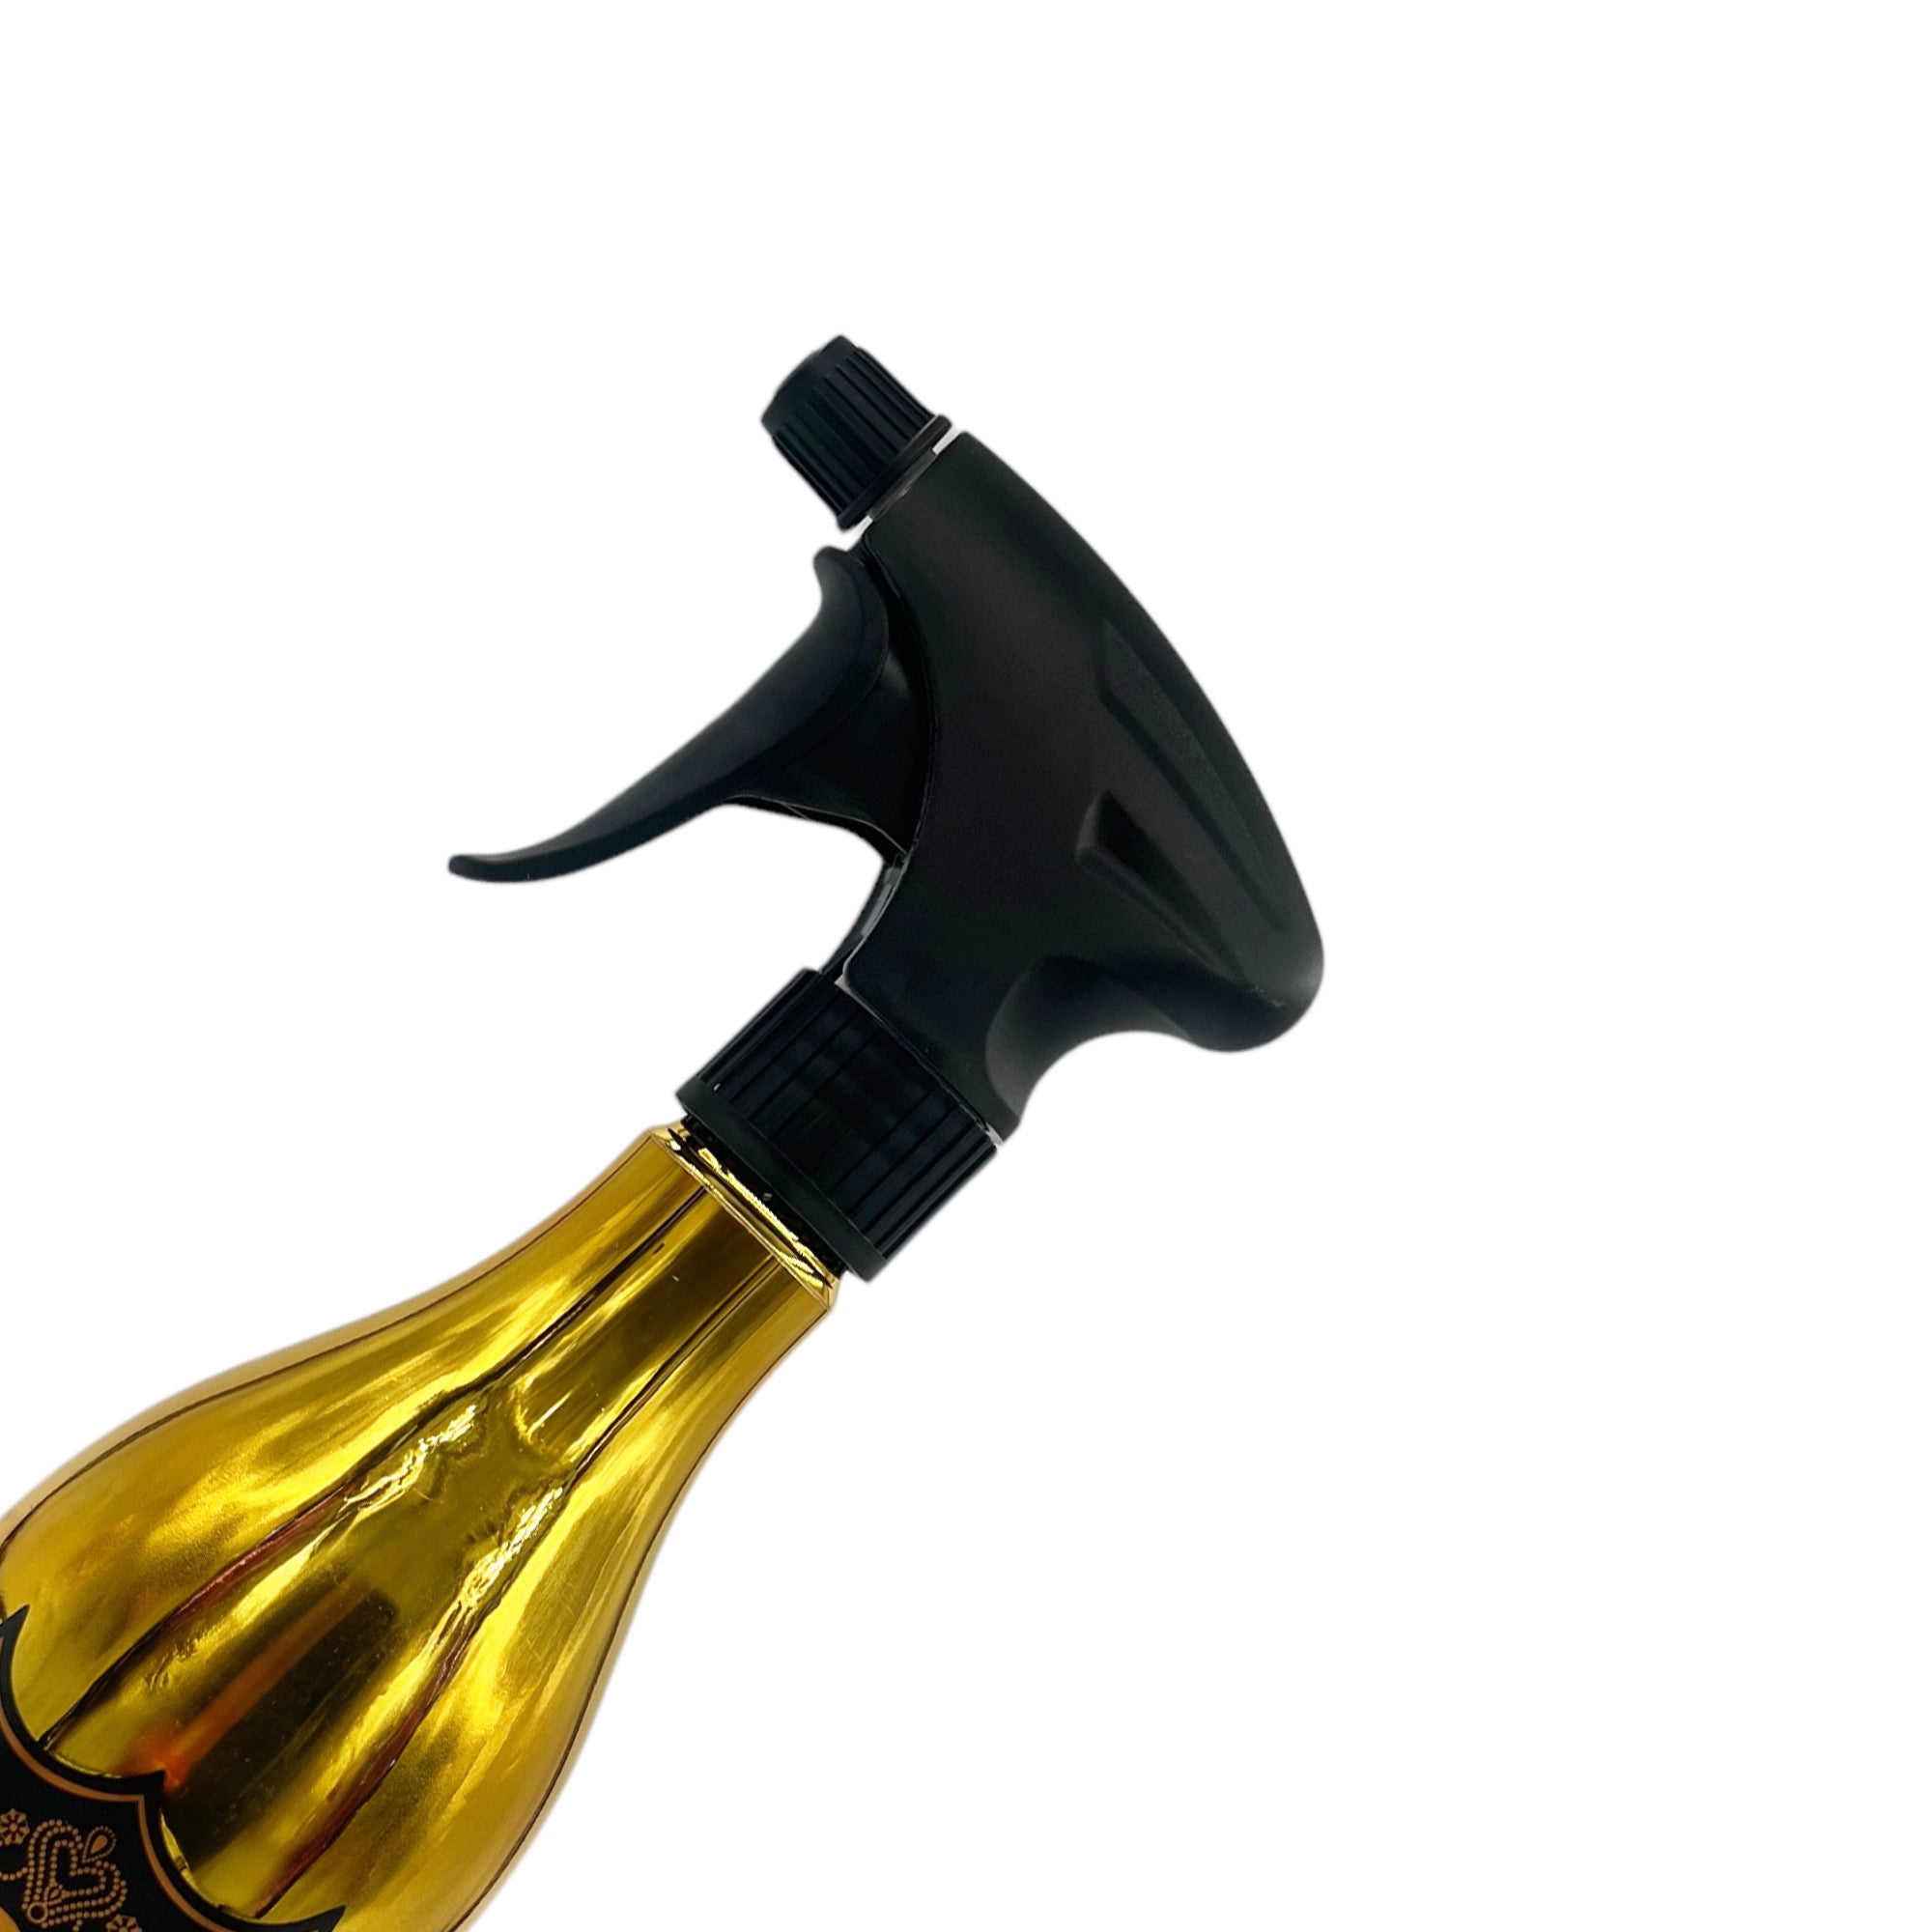 Eson - Water Spray Bottle 500ml Extreme Mist Sprayer Champagne Style (Gold)